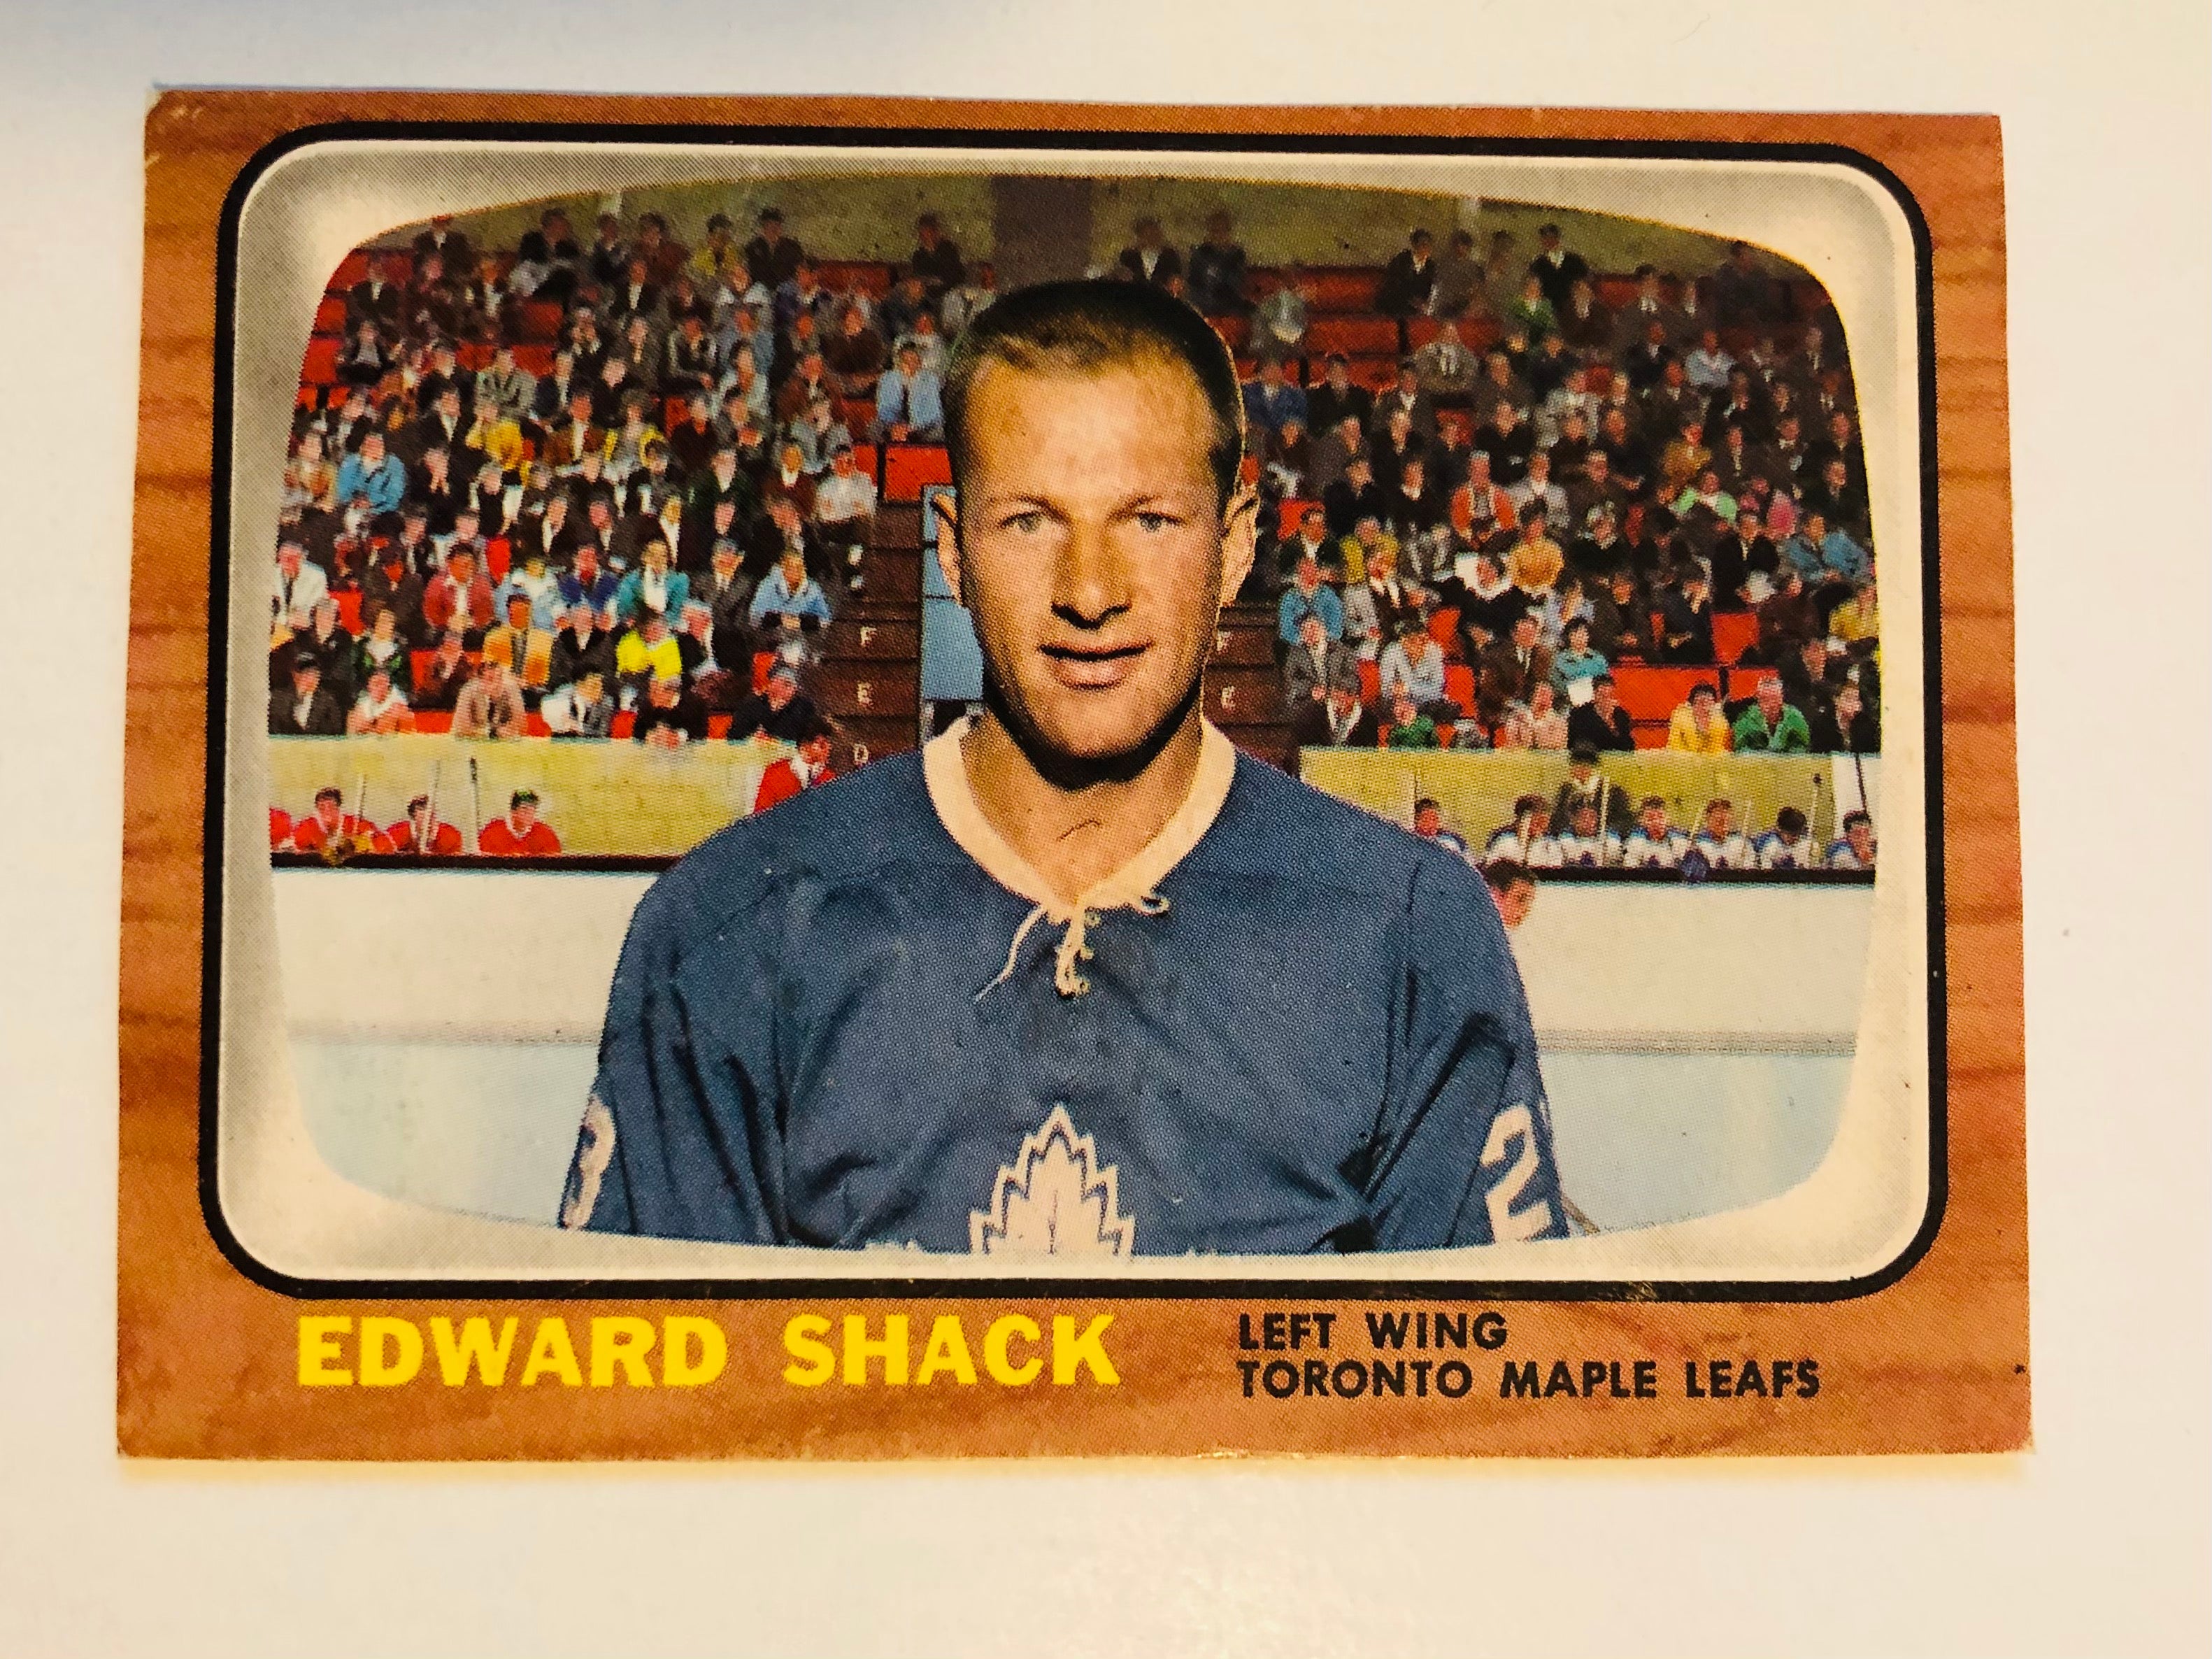 Eddie Shack opc hockey card 1966